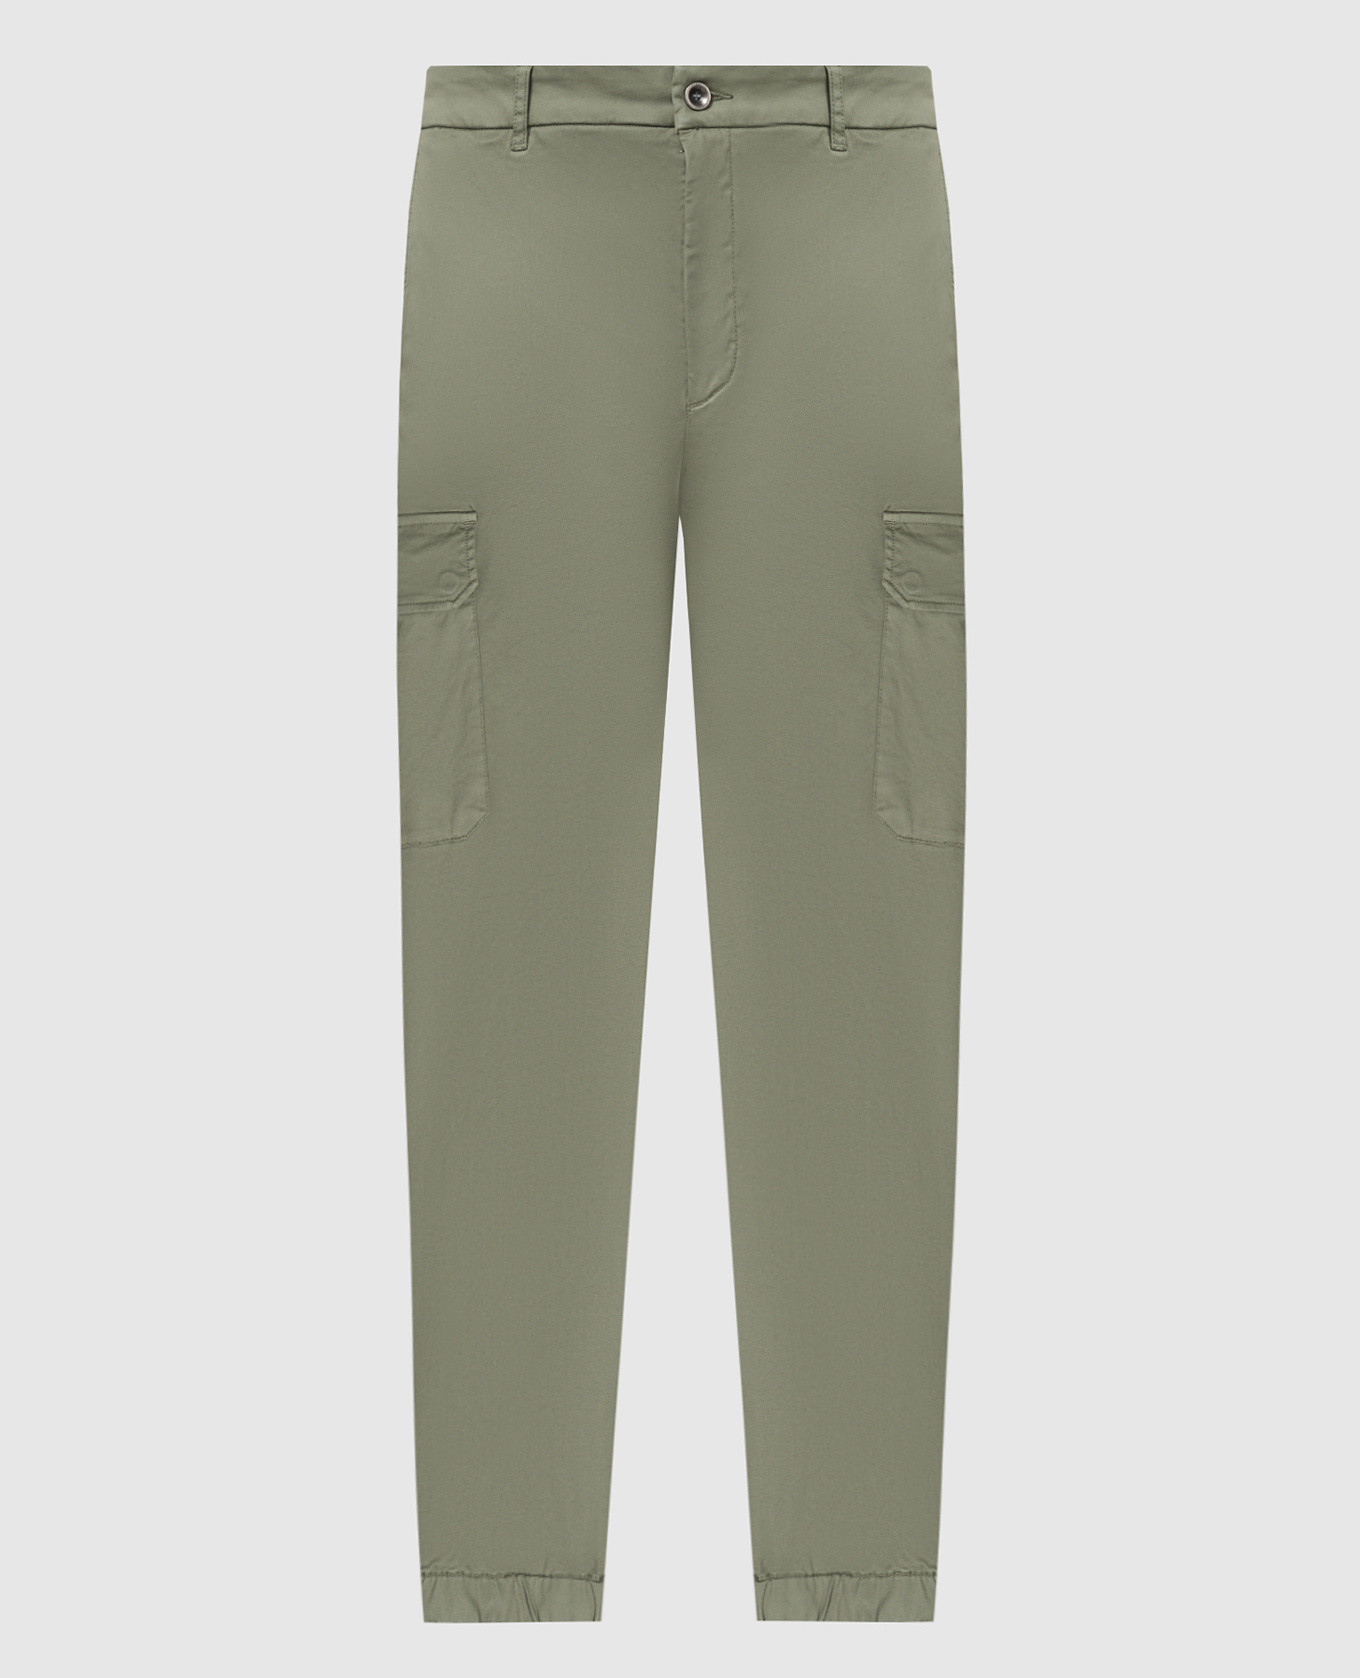 Зеленые брюки-карго с металлическим логотипом.